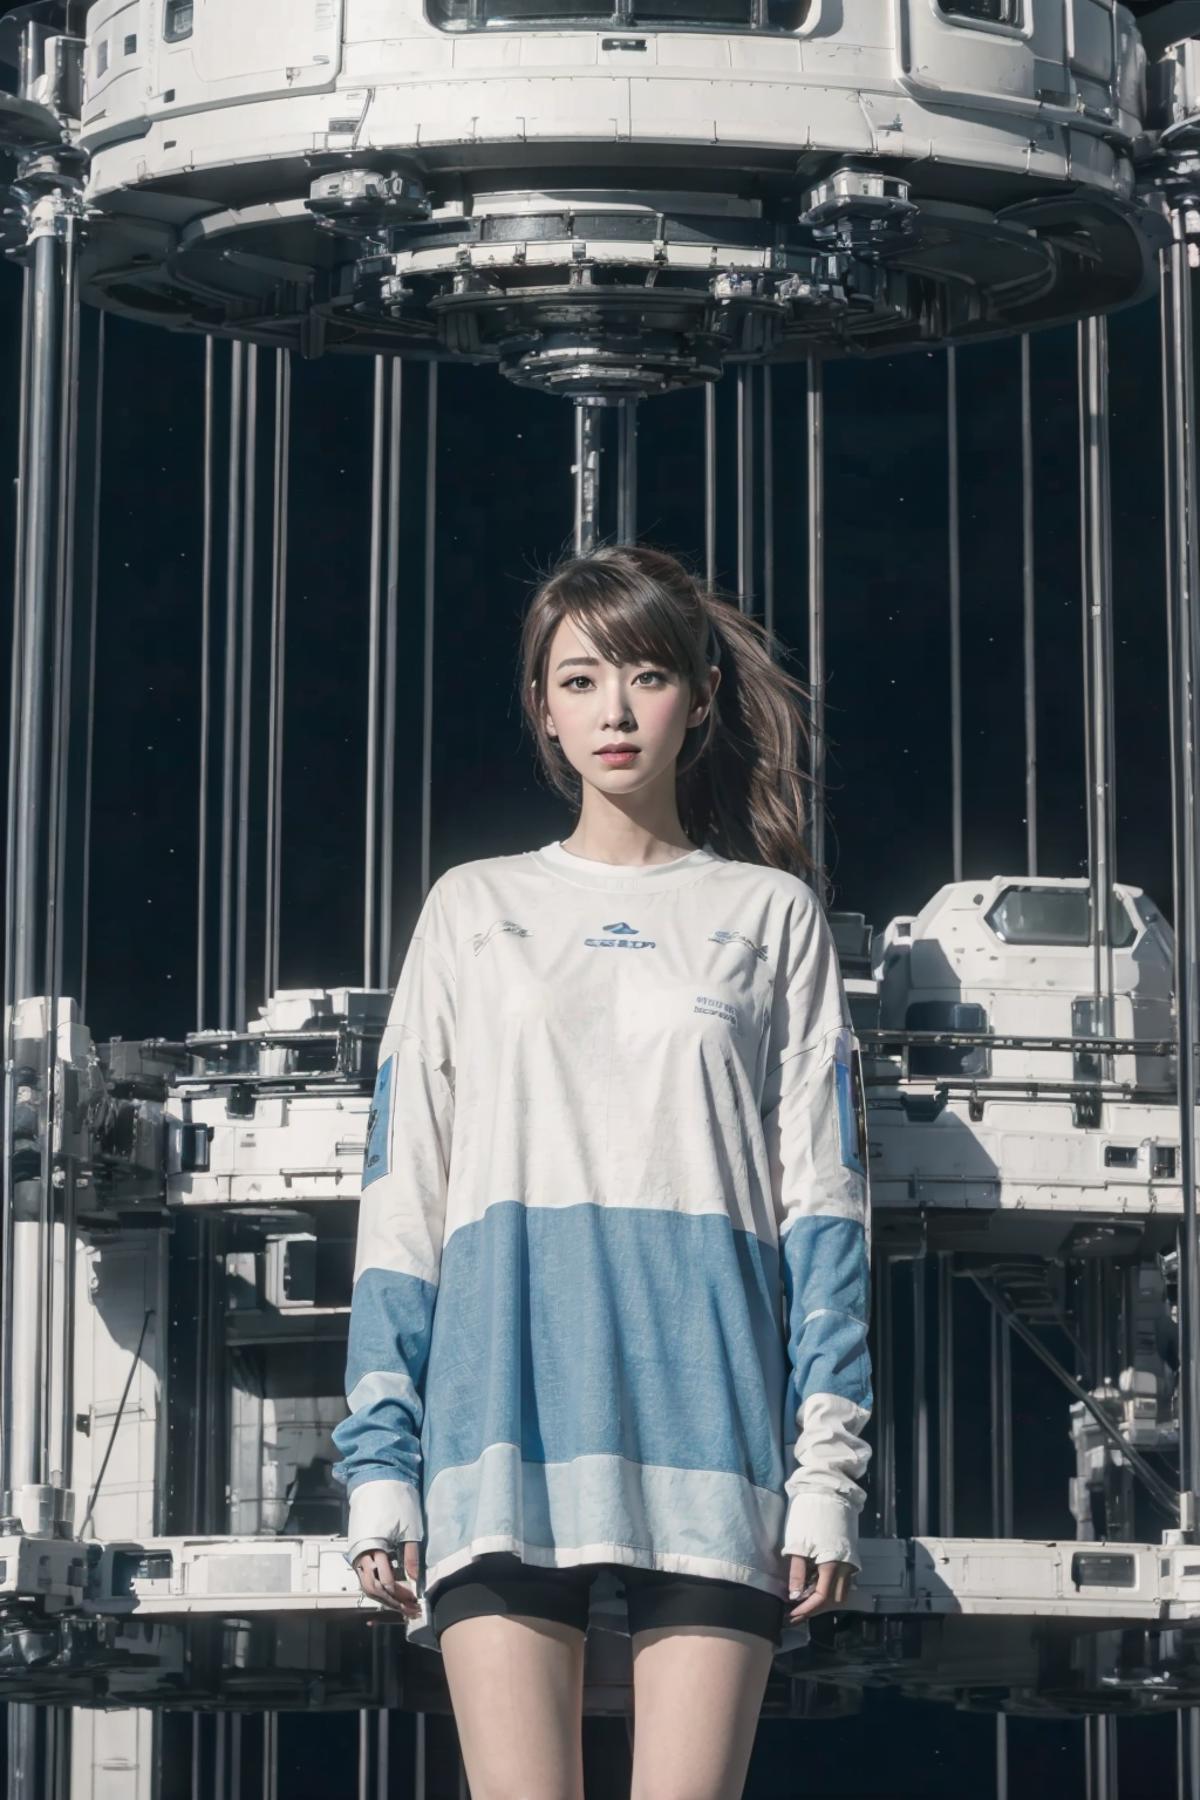 Space elevator太空电梯 image by longxxxx